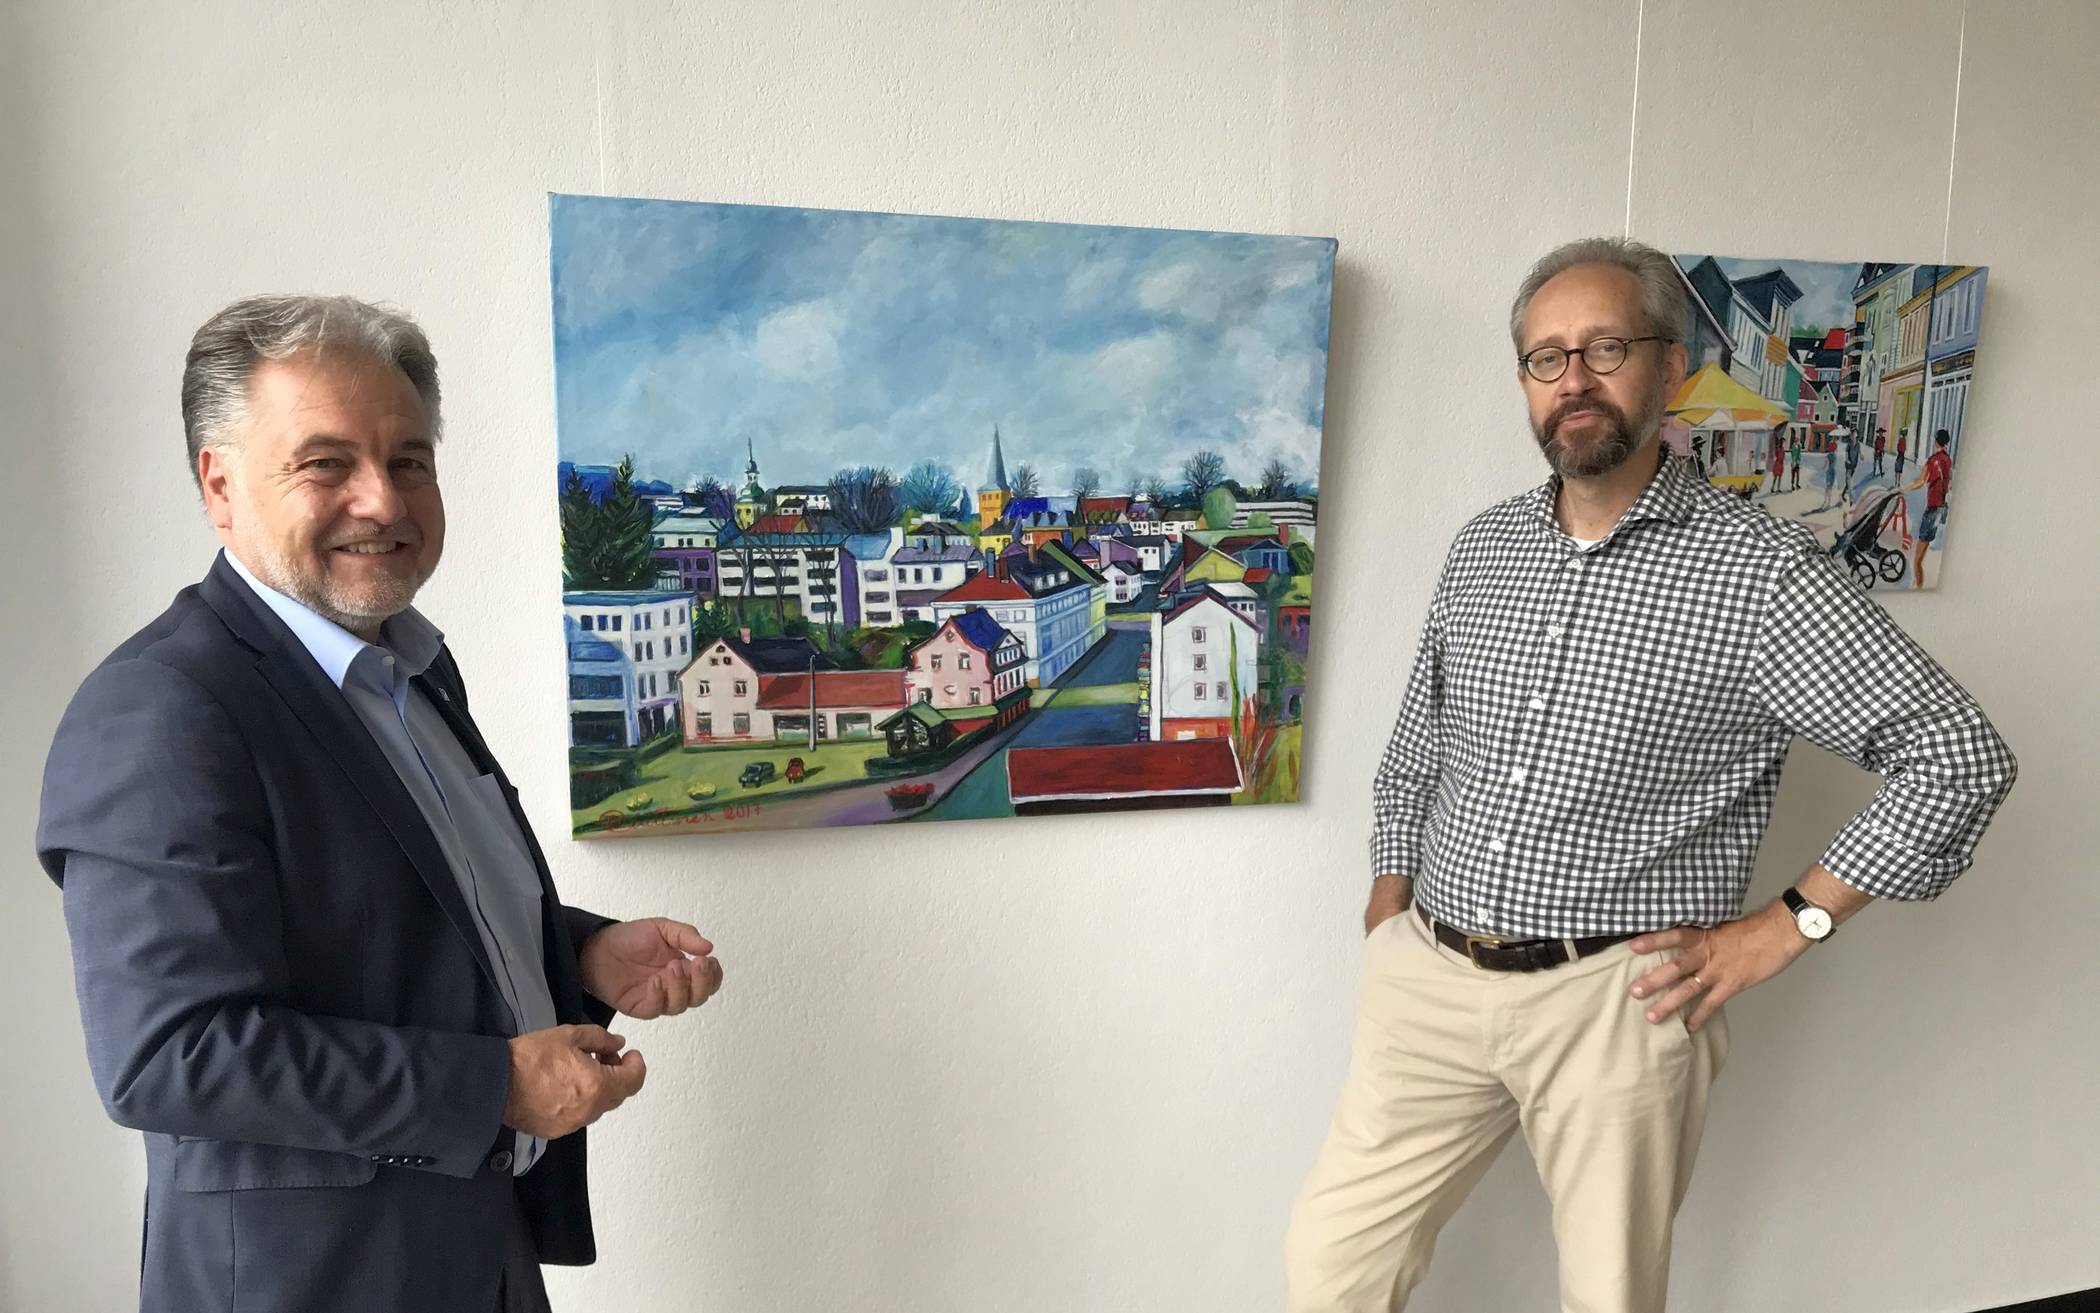  Bürgermeister Thomas Dinkelmann und Sami Luttinen bei einem Rundgang durch die kleine Ausstellung im Rathaus.  